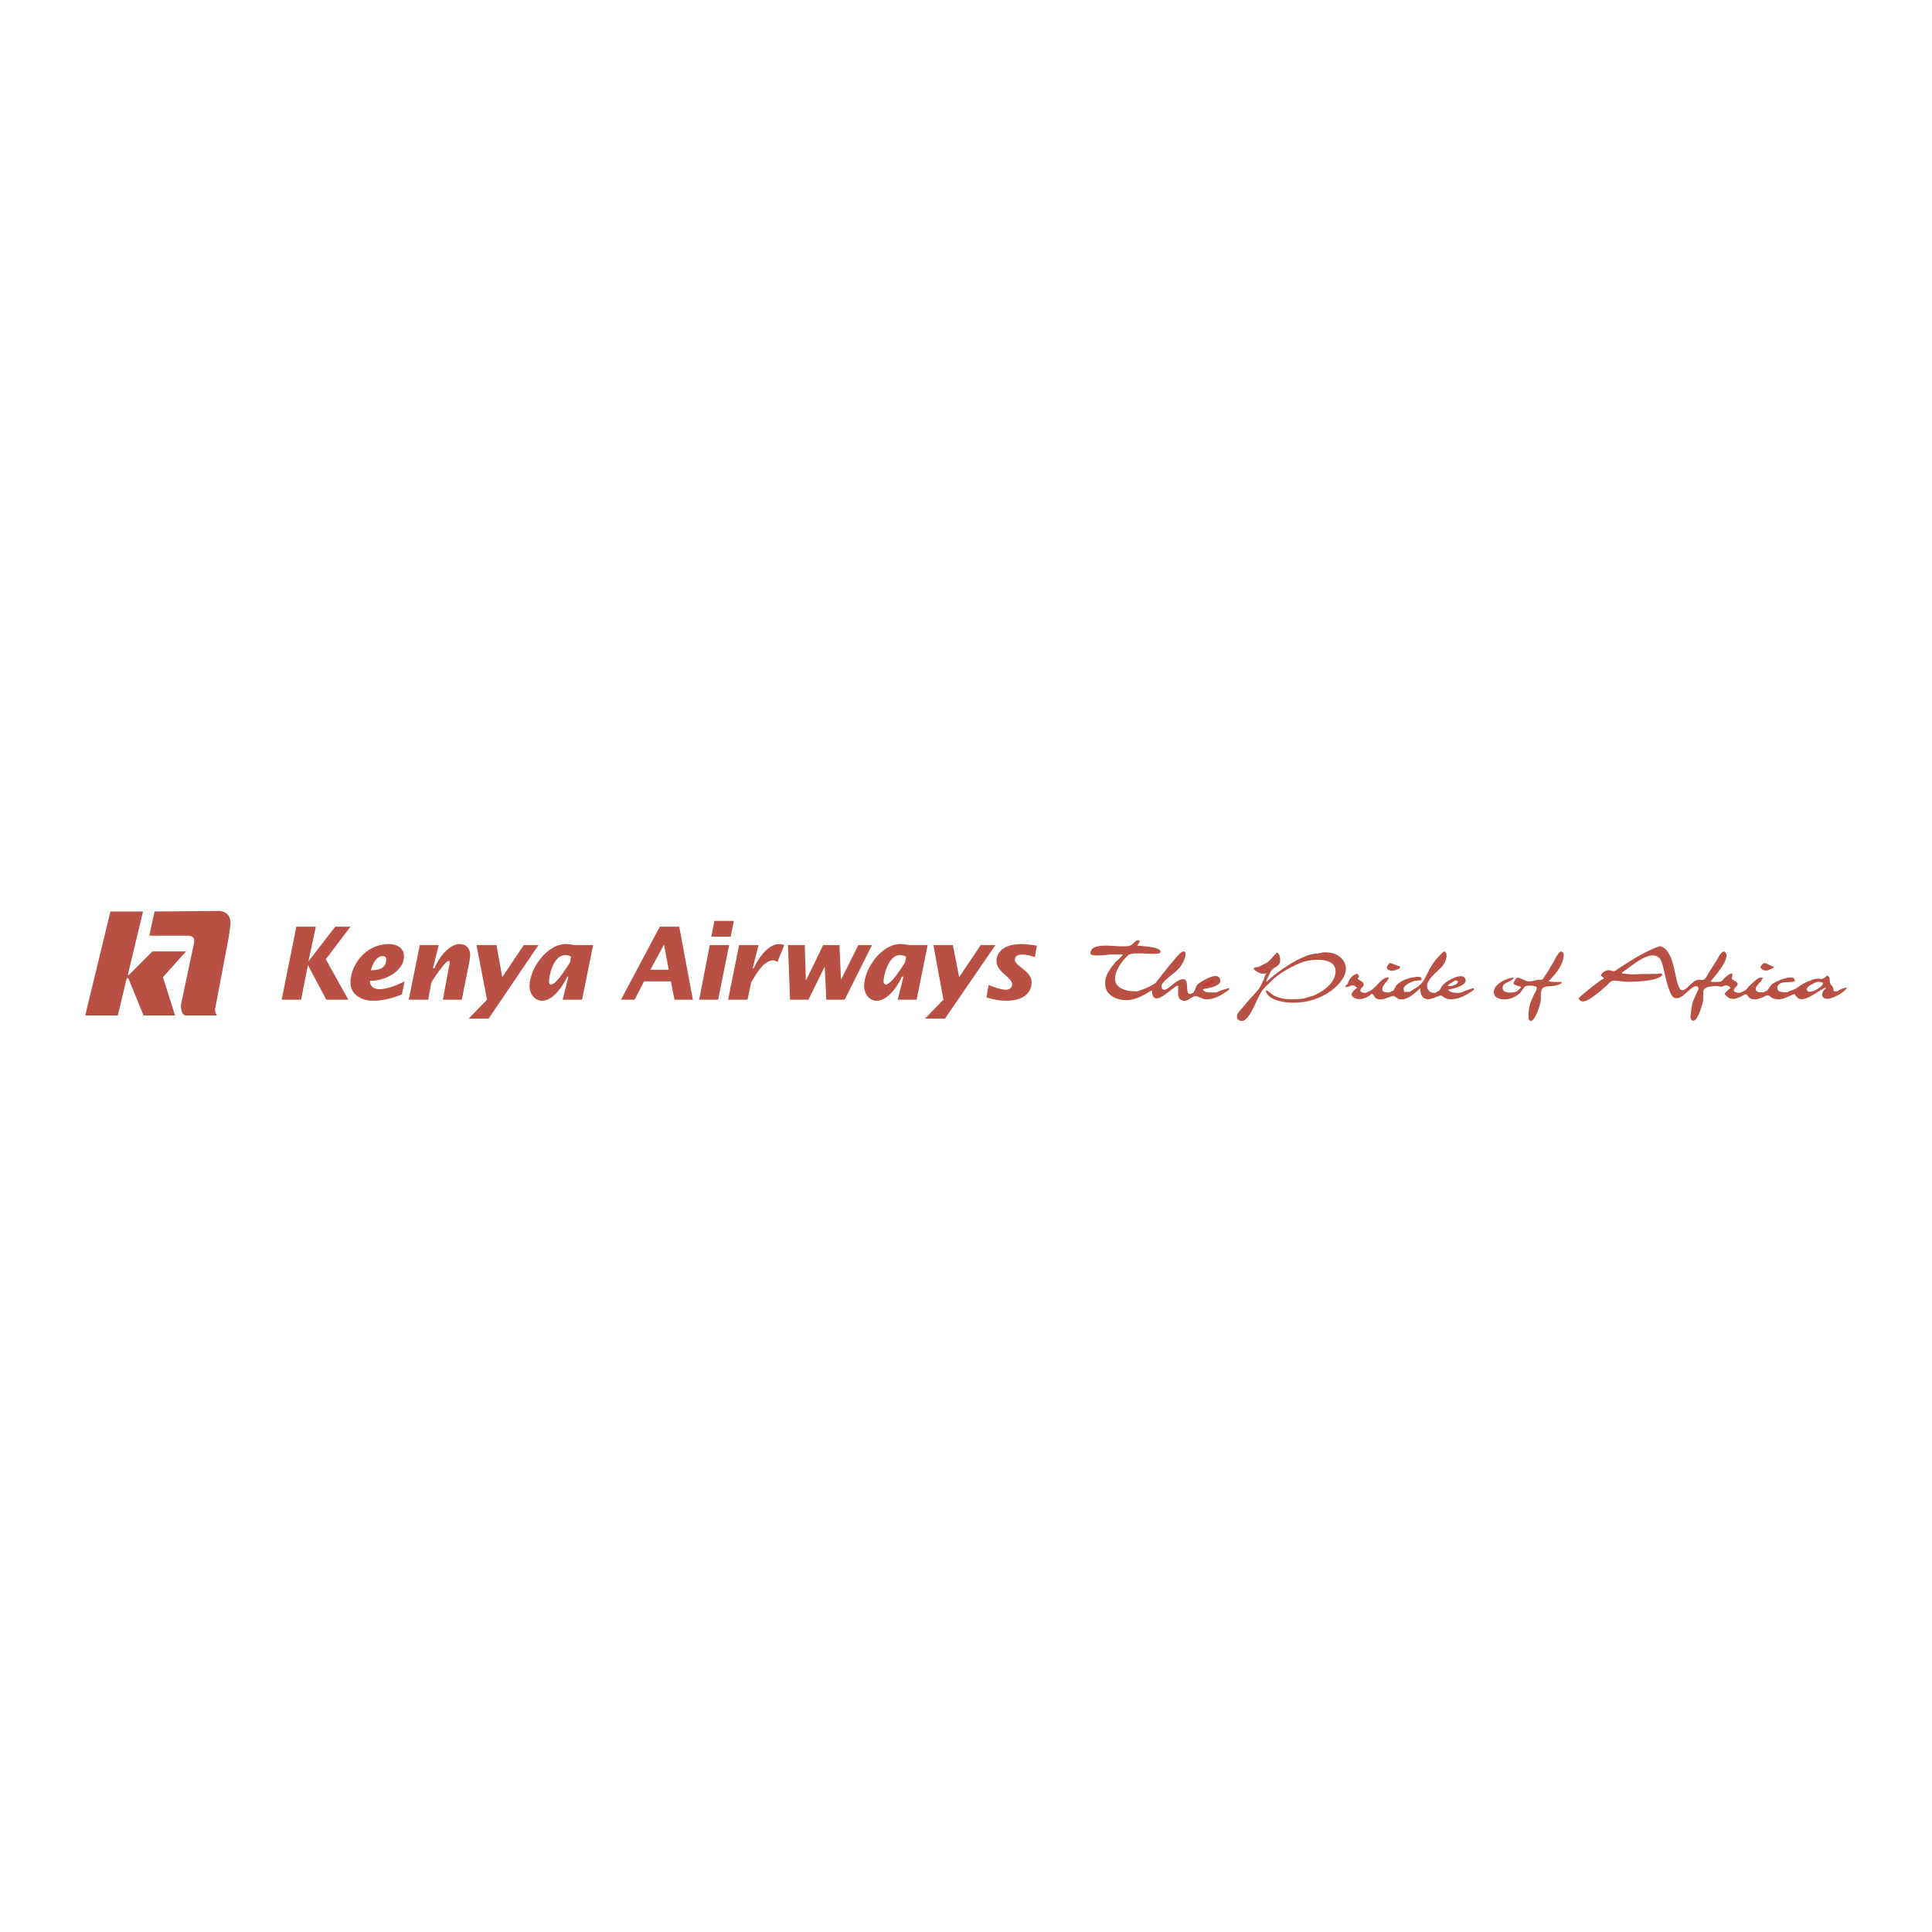 Kenya Airways Cargo tracking